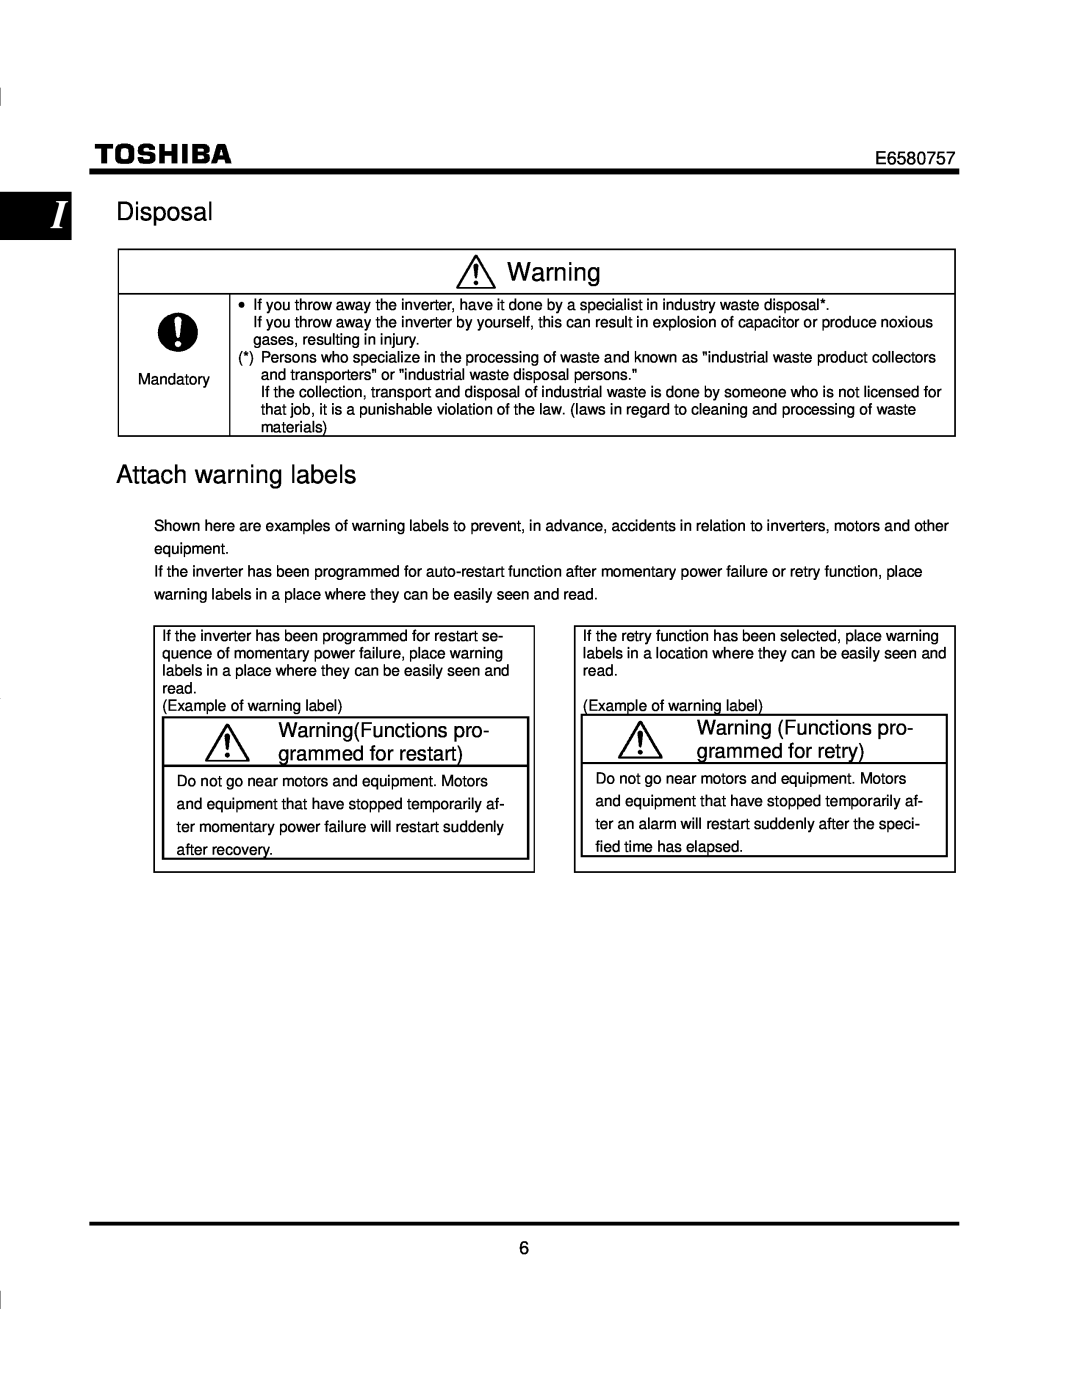 Toshiba VF-S9 manual I Disposal, Attach warning labels, WarningFunctions pro- grammed for restart 